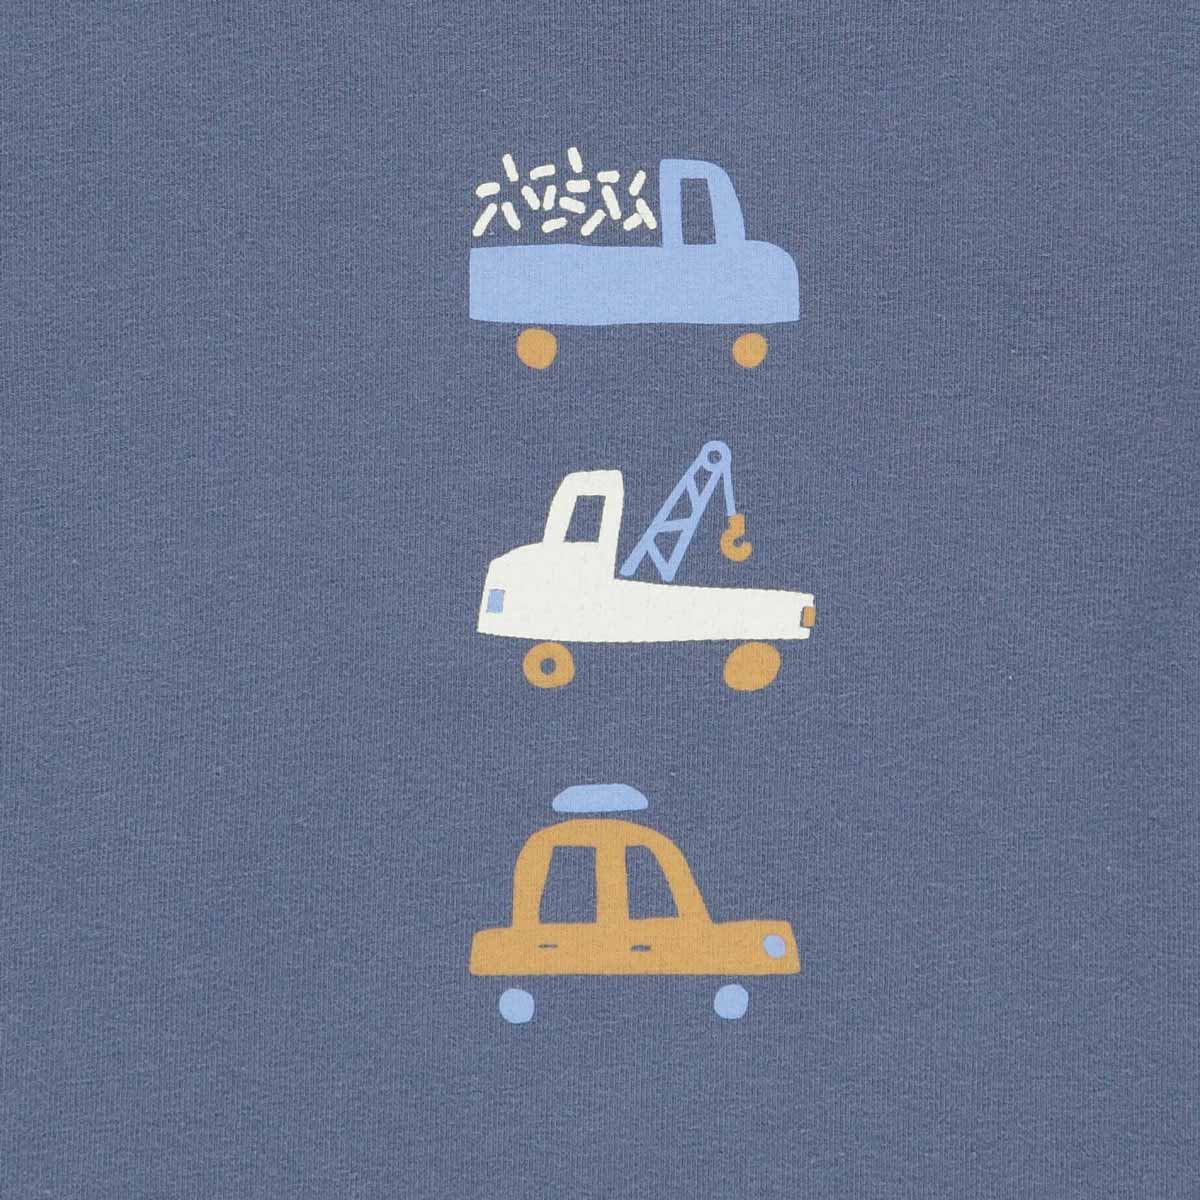 MAMA.LICIOUS müsli Automobile T-shirt -Indigo - 1511079200